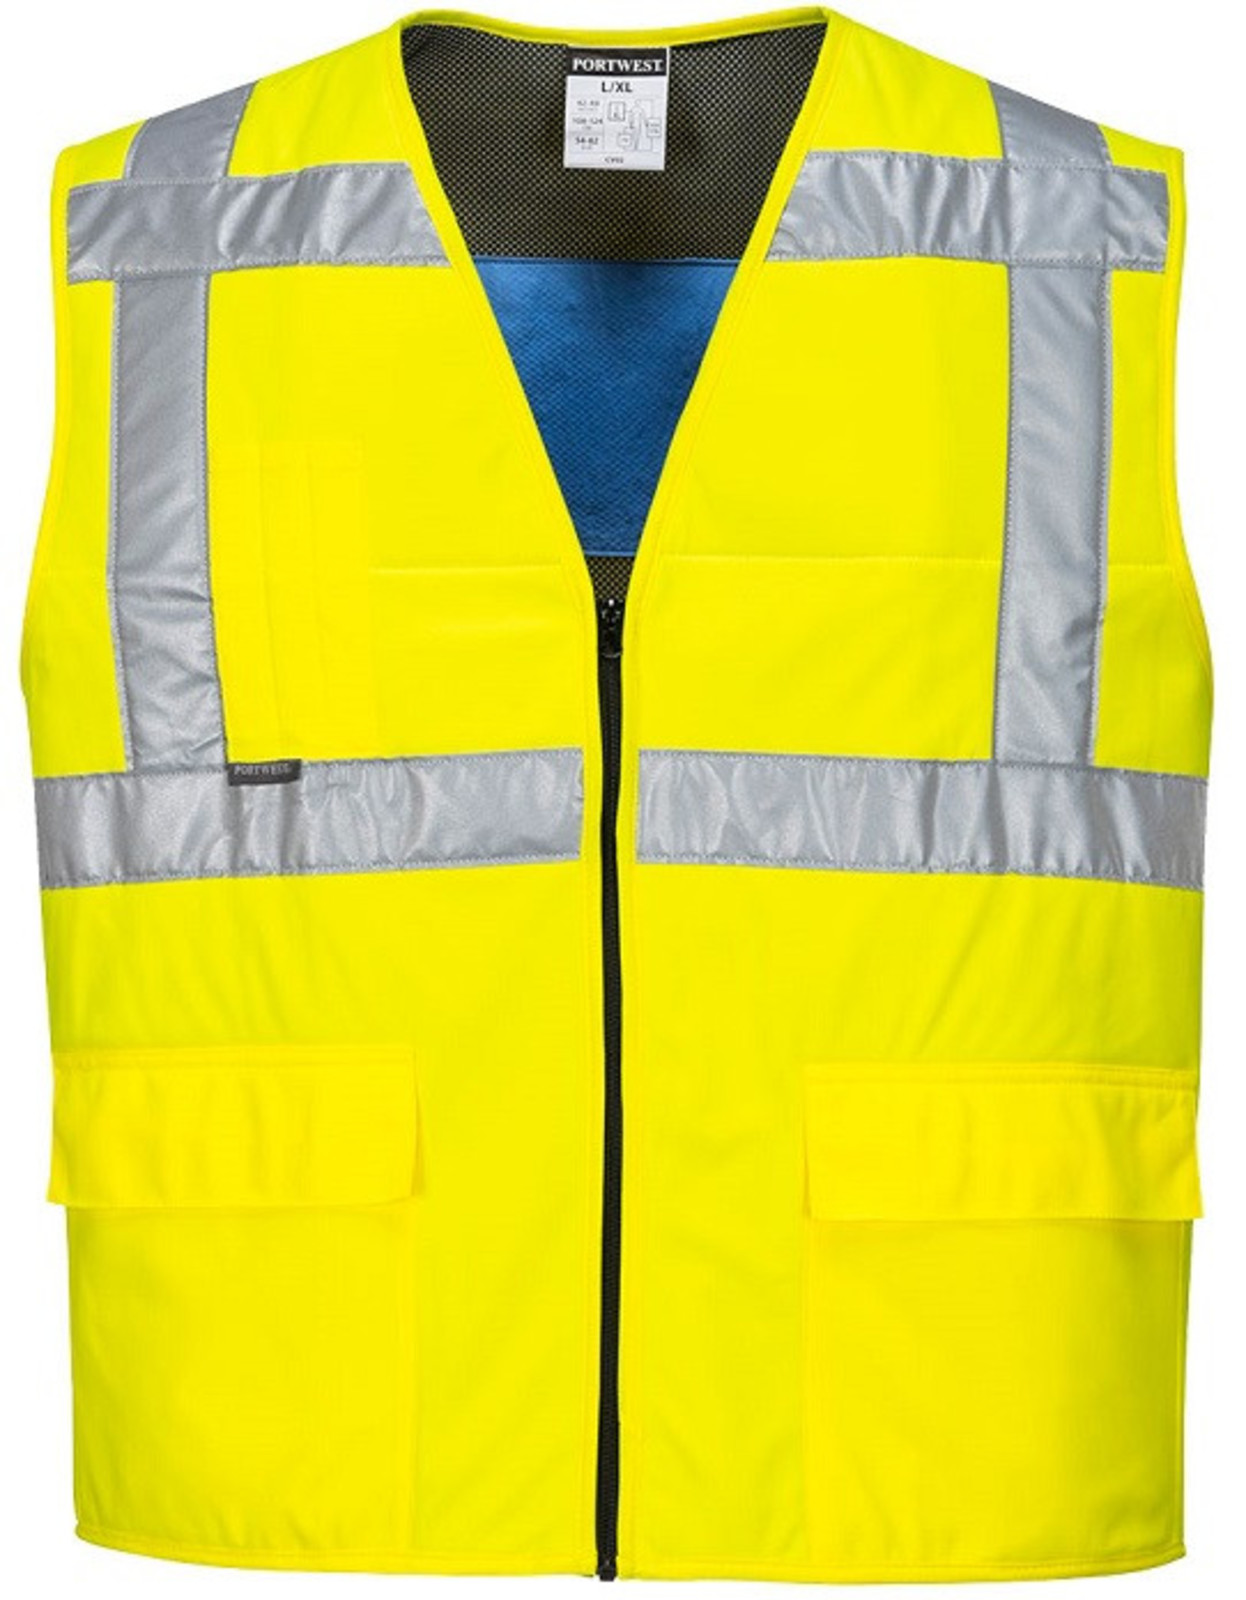 Chladiaca reflexná vesta Portwest CV02 - veľkosť: L/XL, farba: žltá